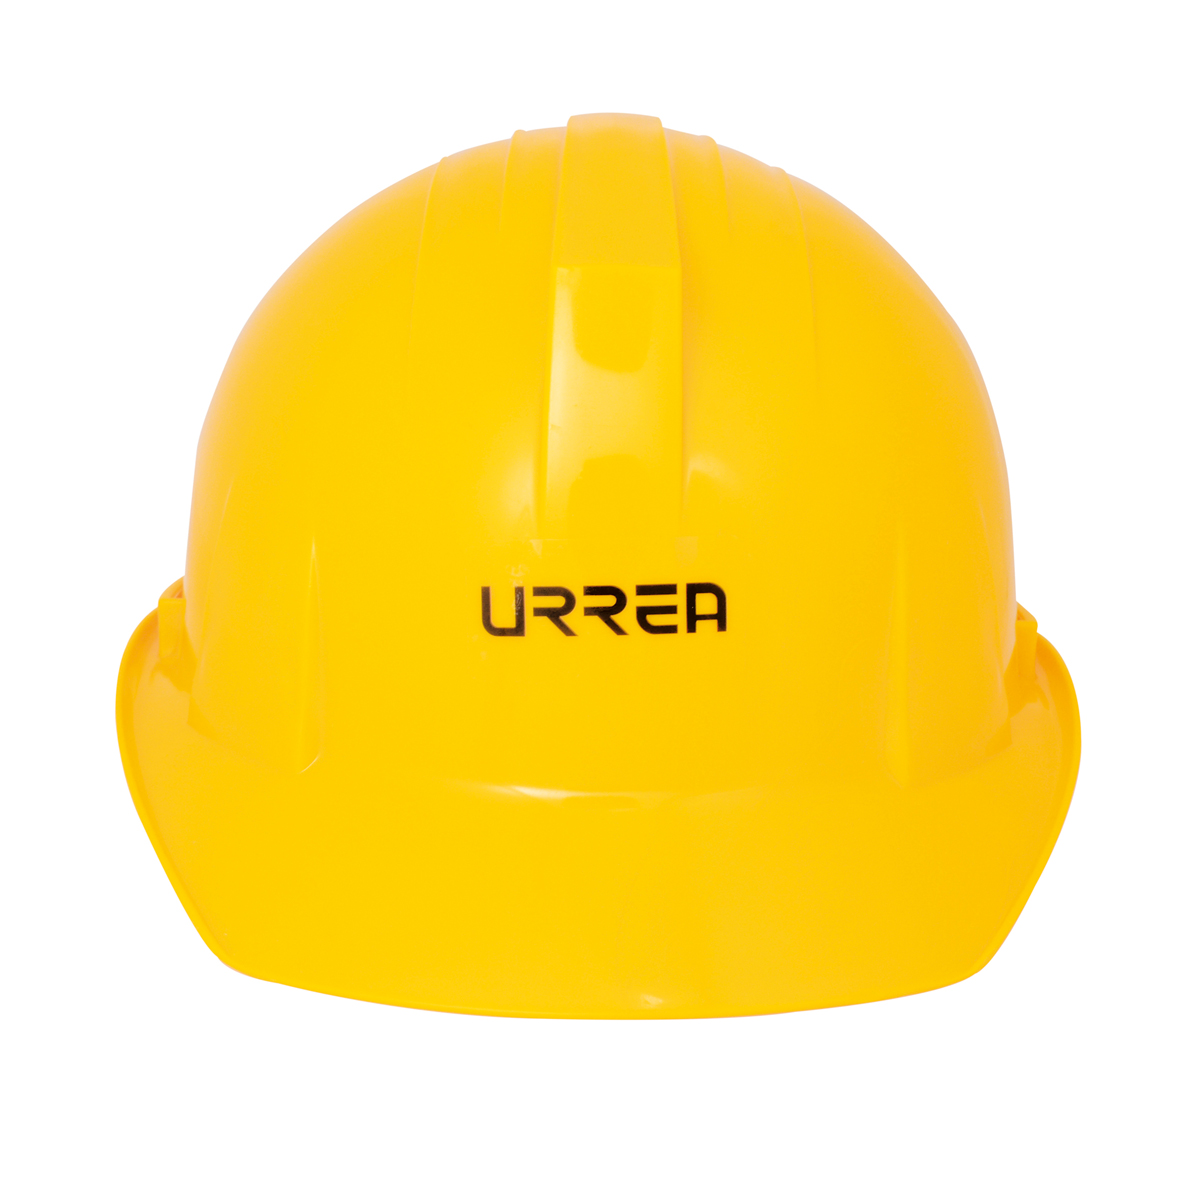 Imagen para Casco de seguridad con ajustede intervalos, color amarillo de Grupo Urrea